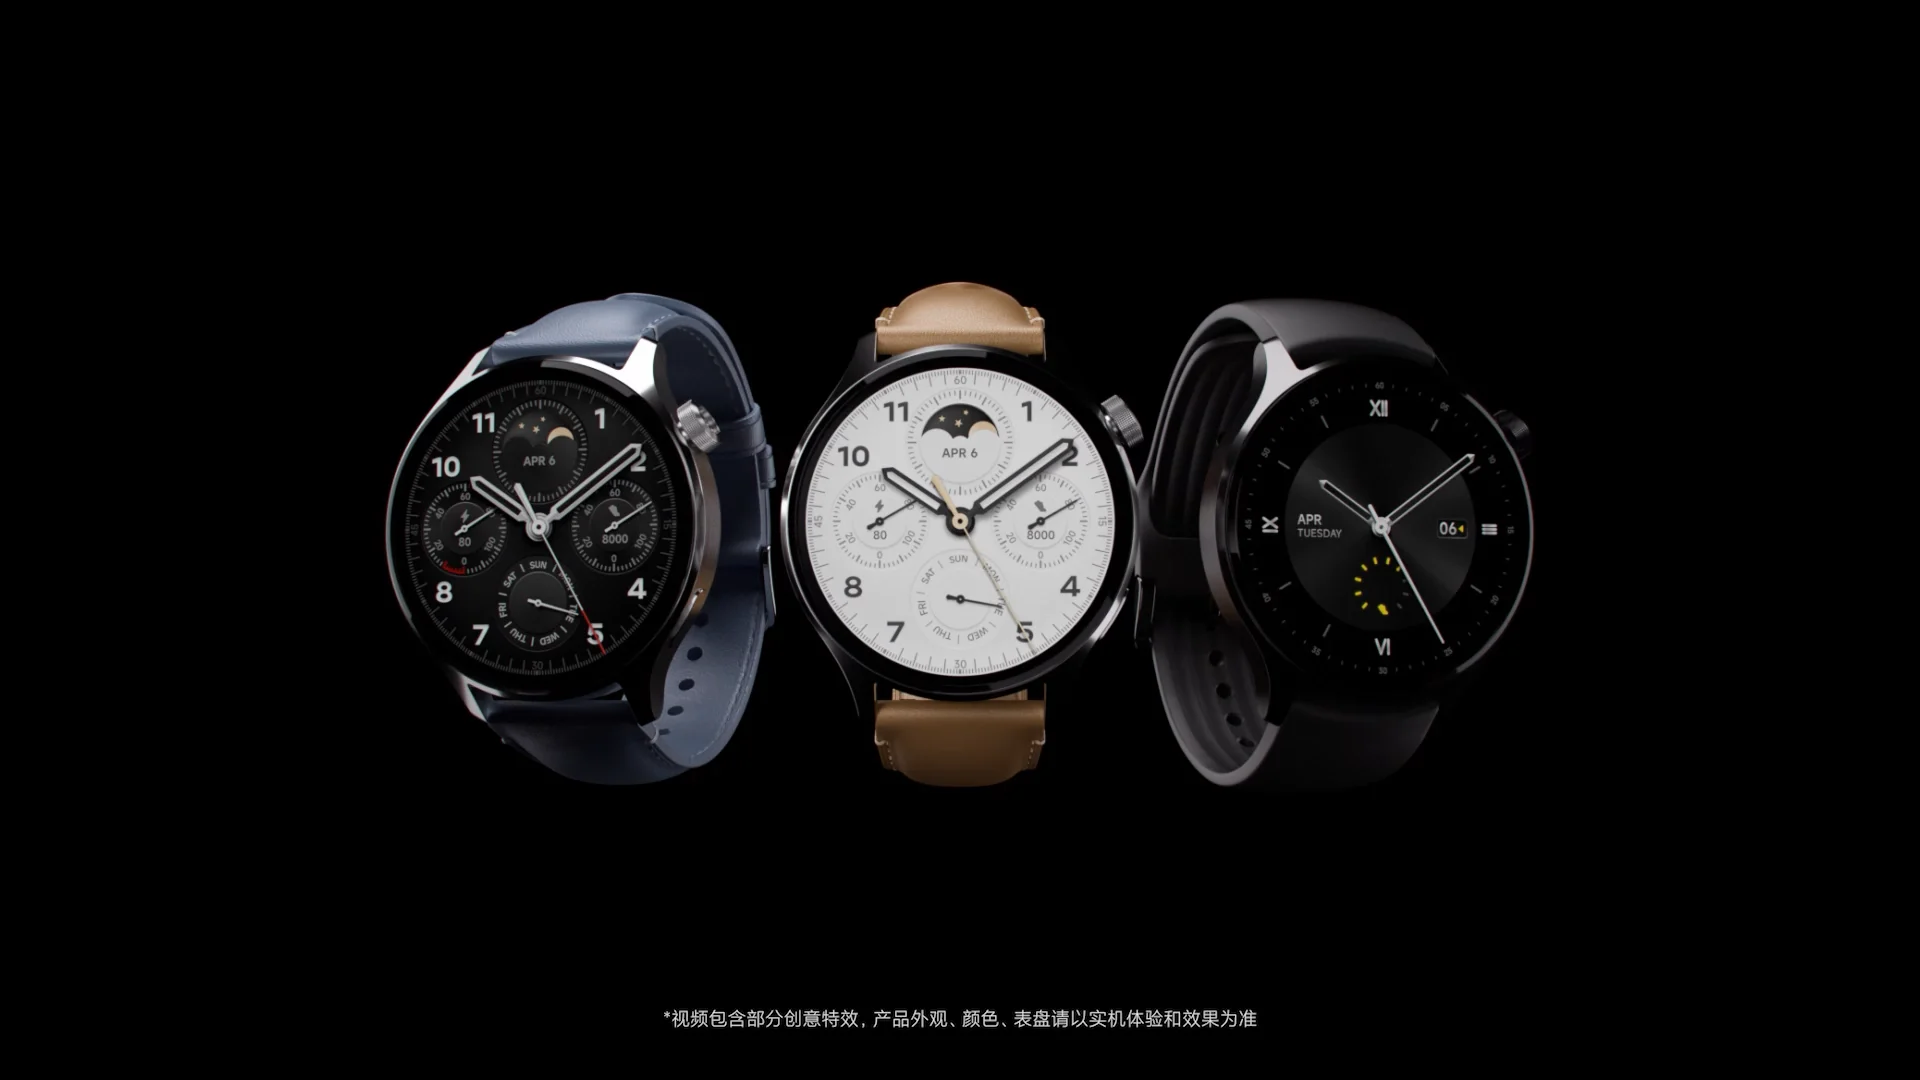 Xiaomi watch t2. Xiaomi watch s1 Pro. Xiaomi watch s1. Xiaomi watch 2 Pro. Xiaomi watch s1 Pro Global.